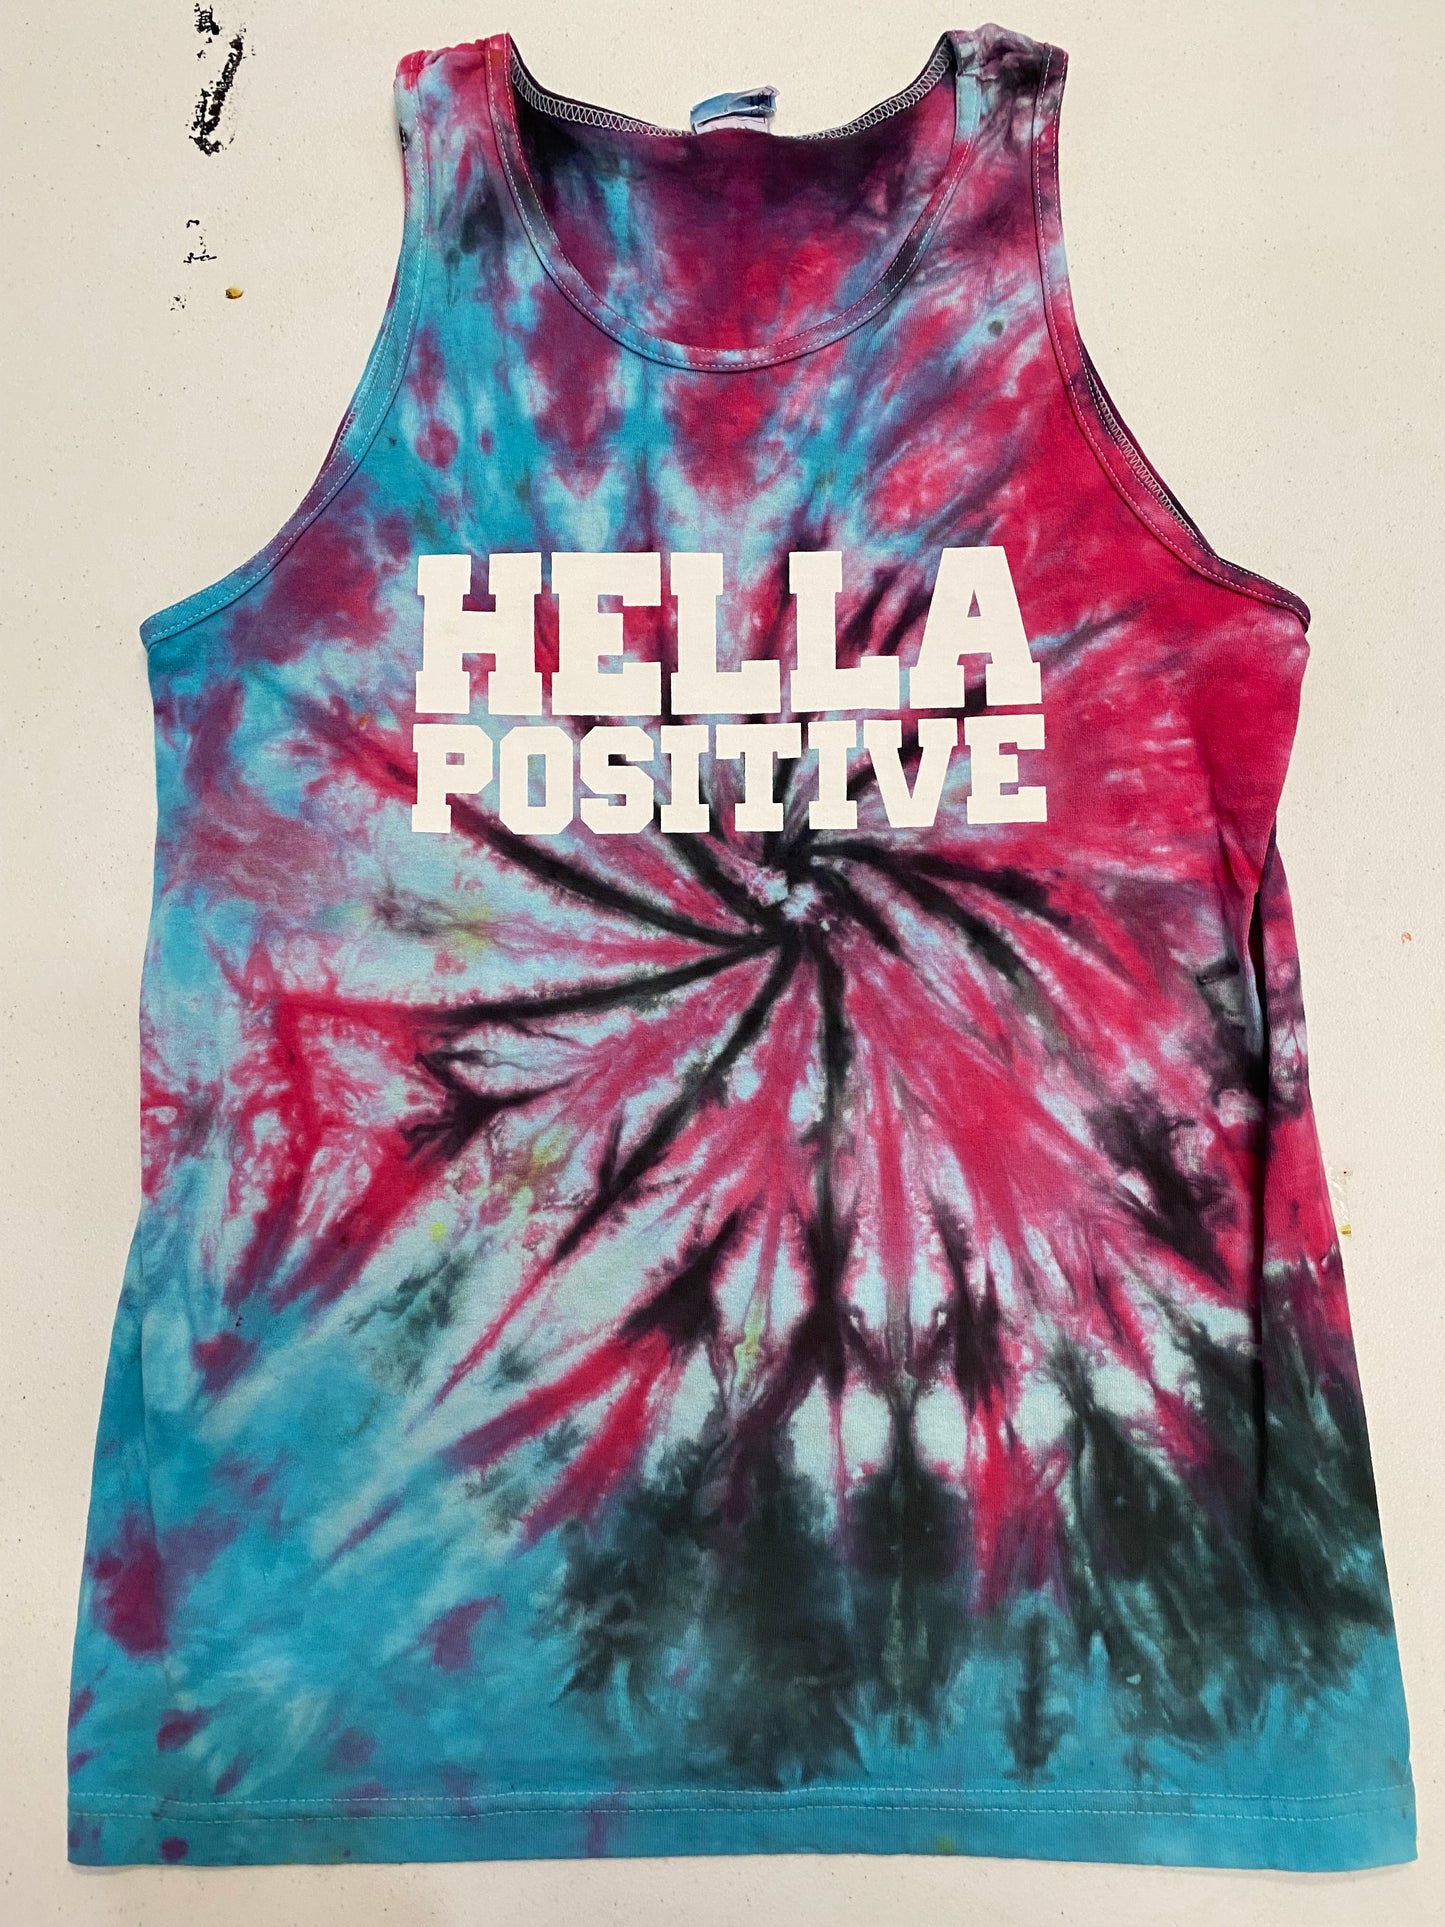 Hella Positive Tie Dye Tank Top - Medium